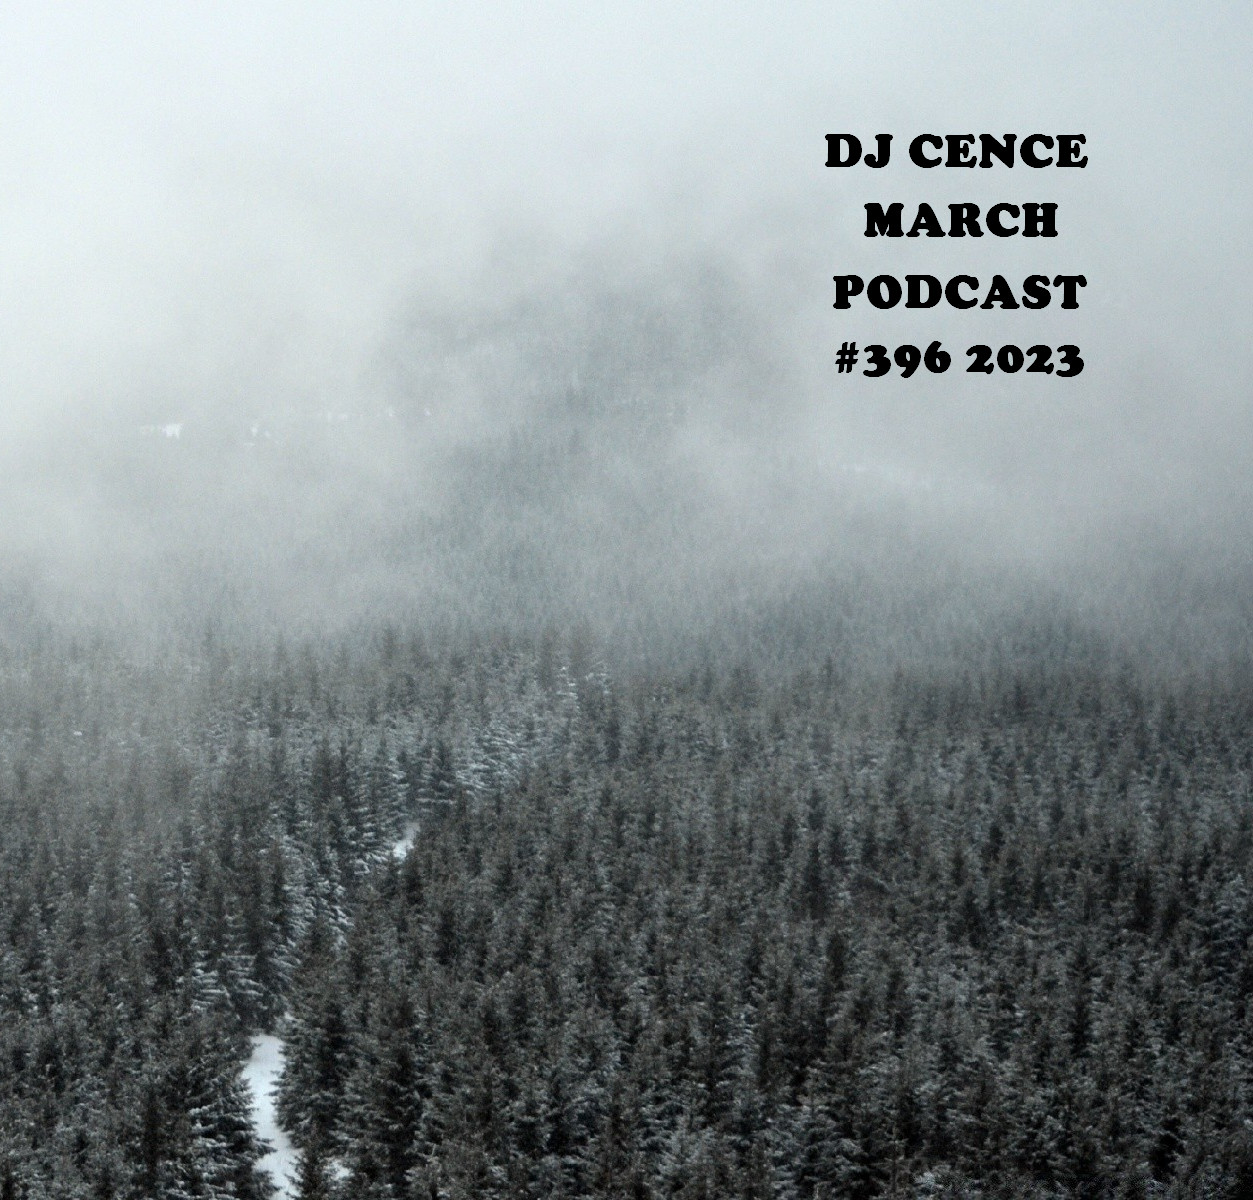 DJ CENCE MARCH PODCAST #396 #2023